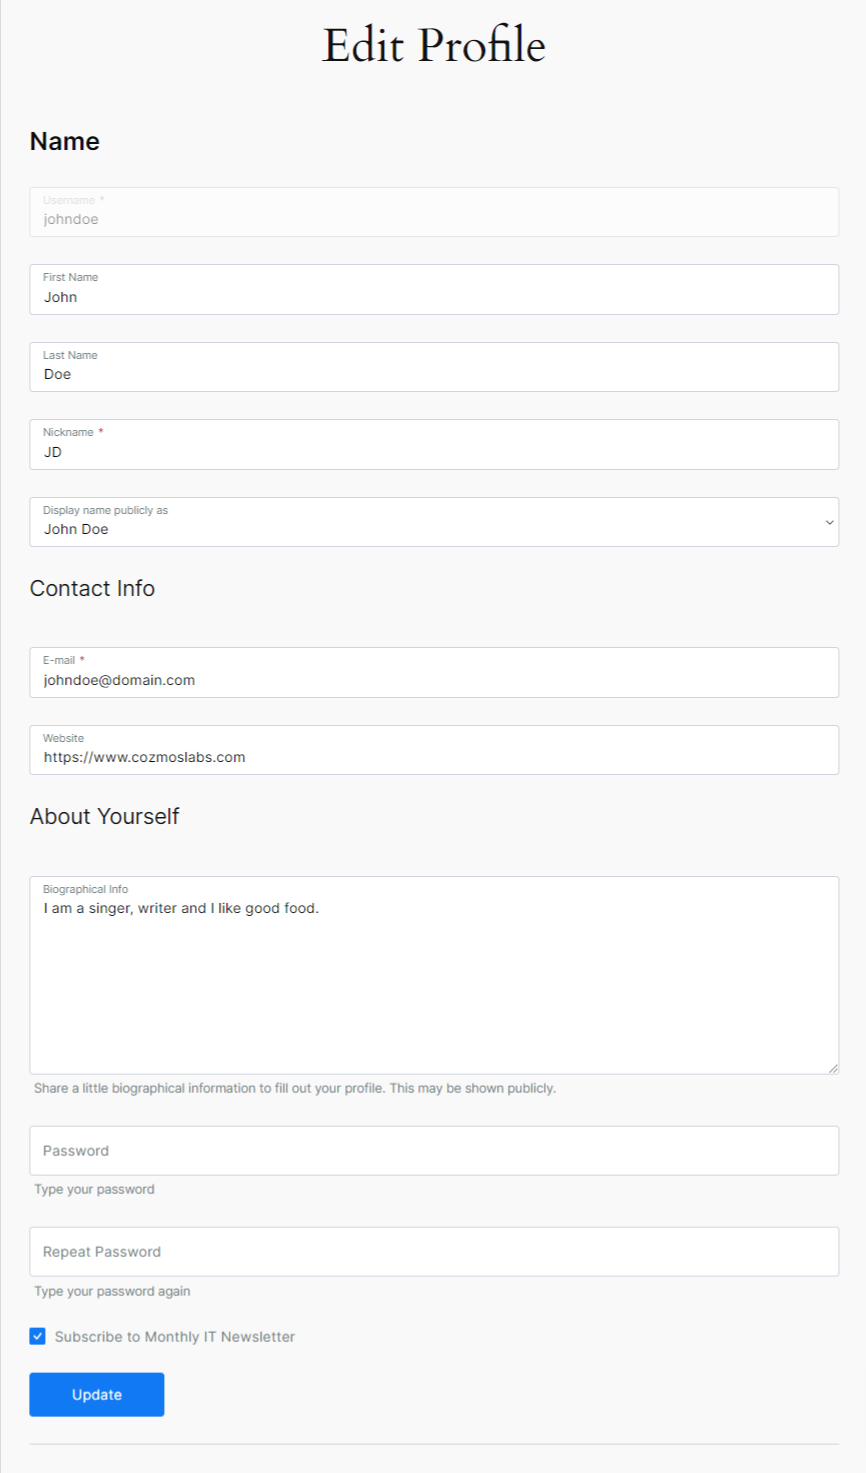 Profile Builder - MailChimp - Edit Profile Form